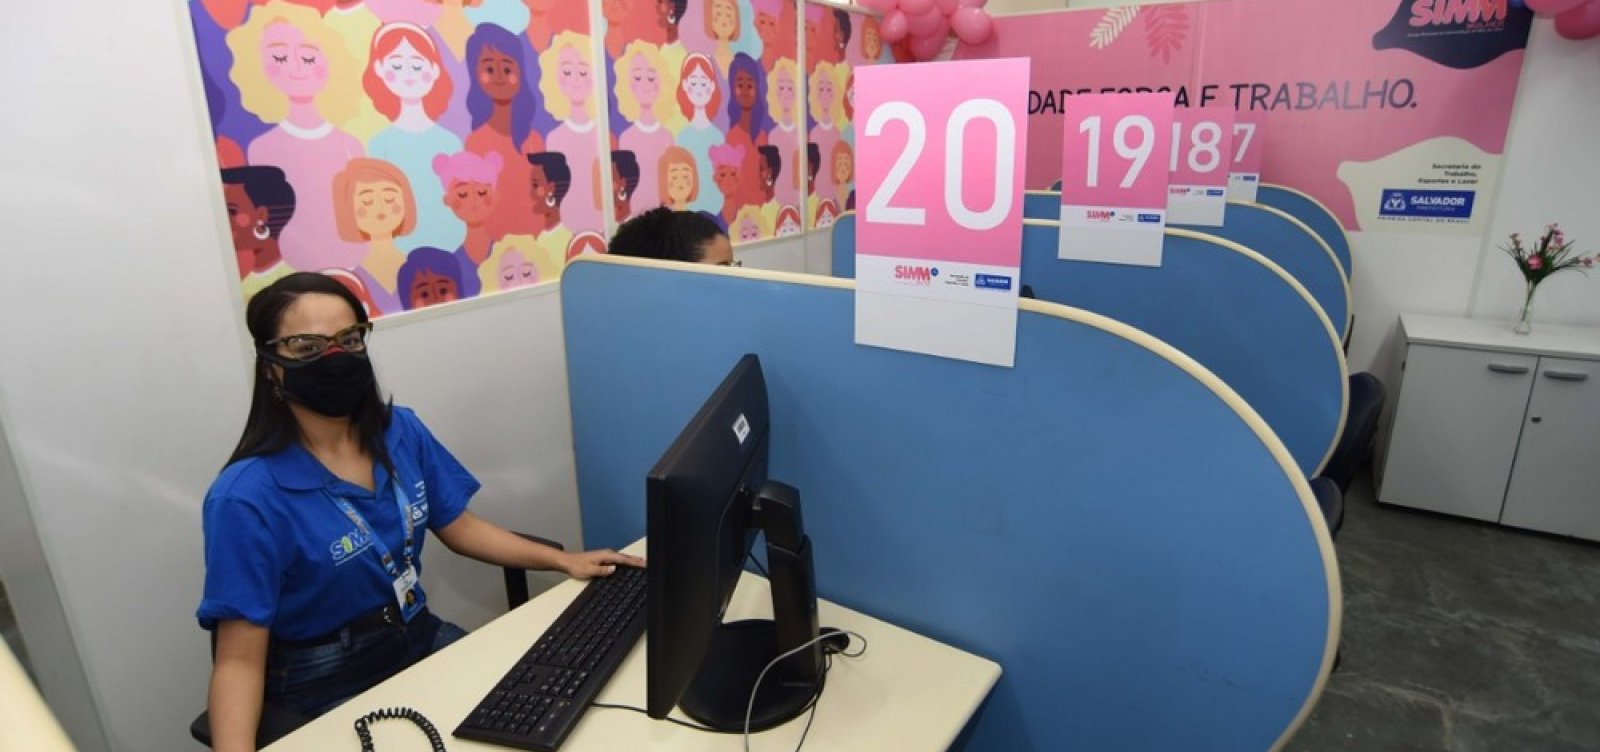 Emprego: Simm exclusivo para mulheres é inaugurado em Salvador